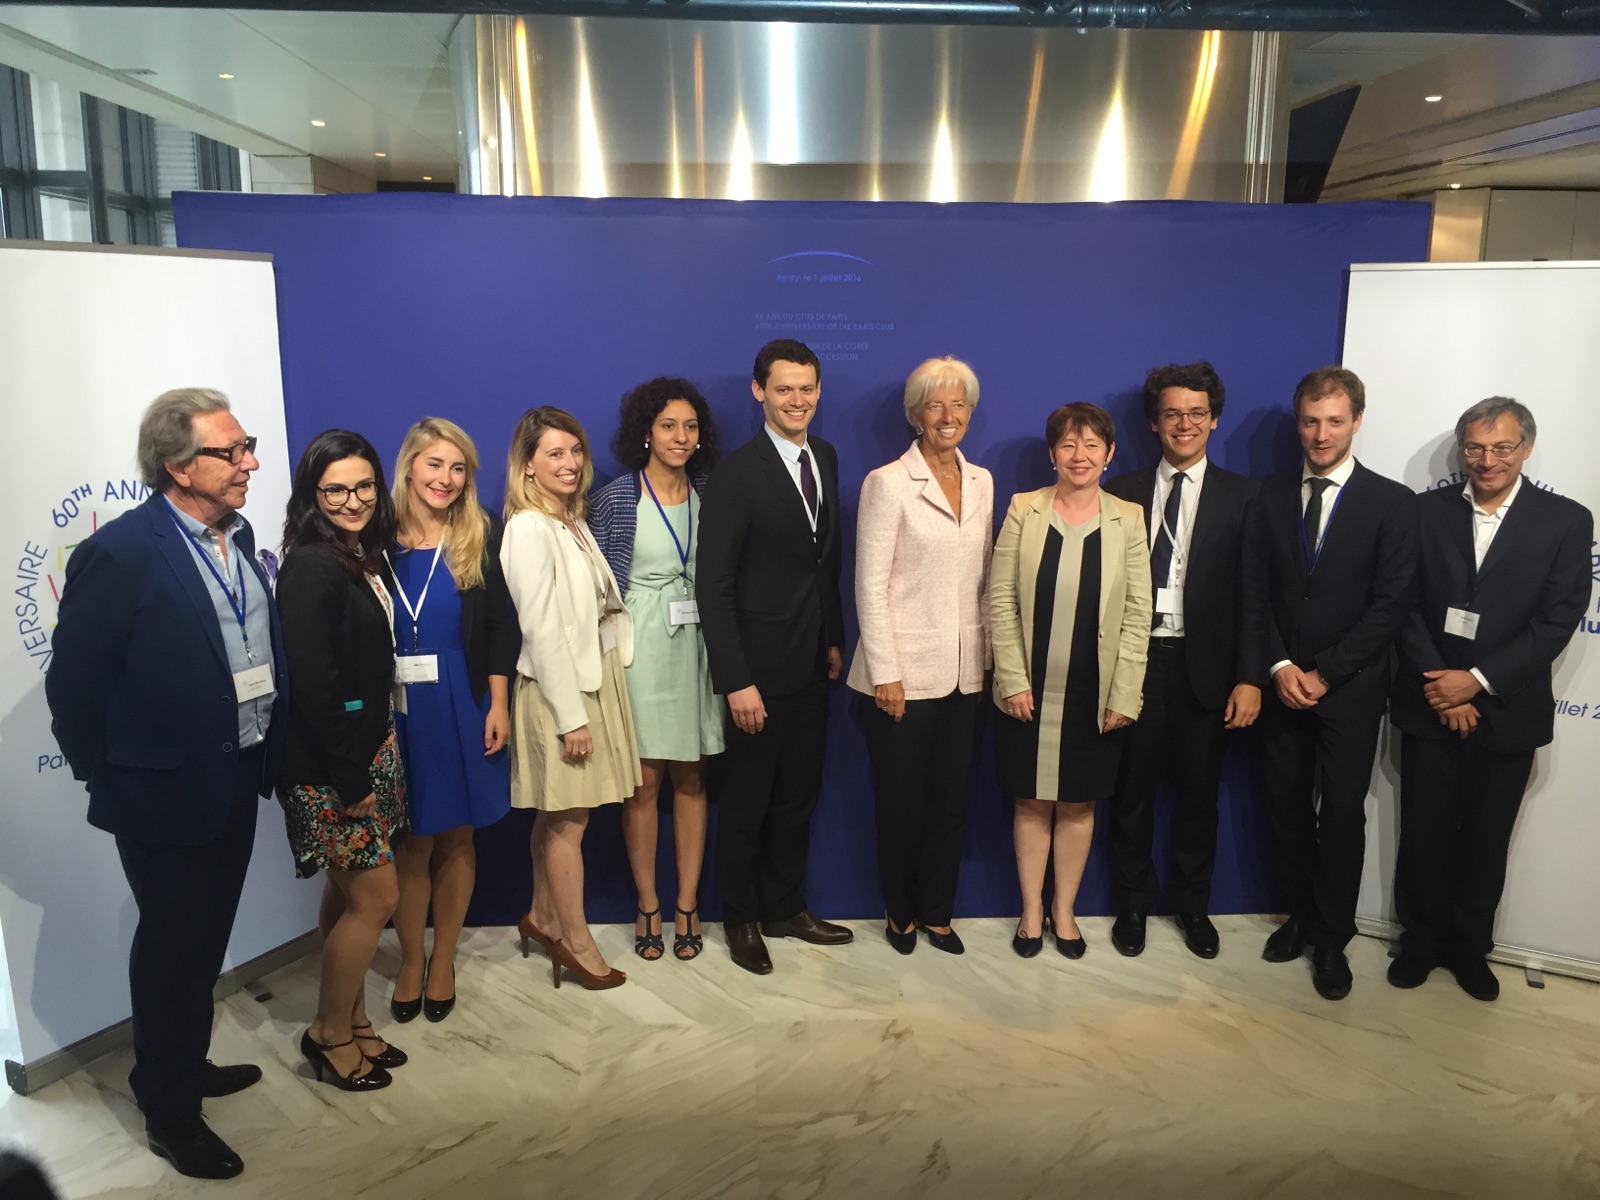 Christine LAGARDE, IMF and the Secretariat of the Paris Club